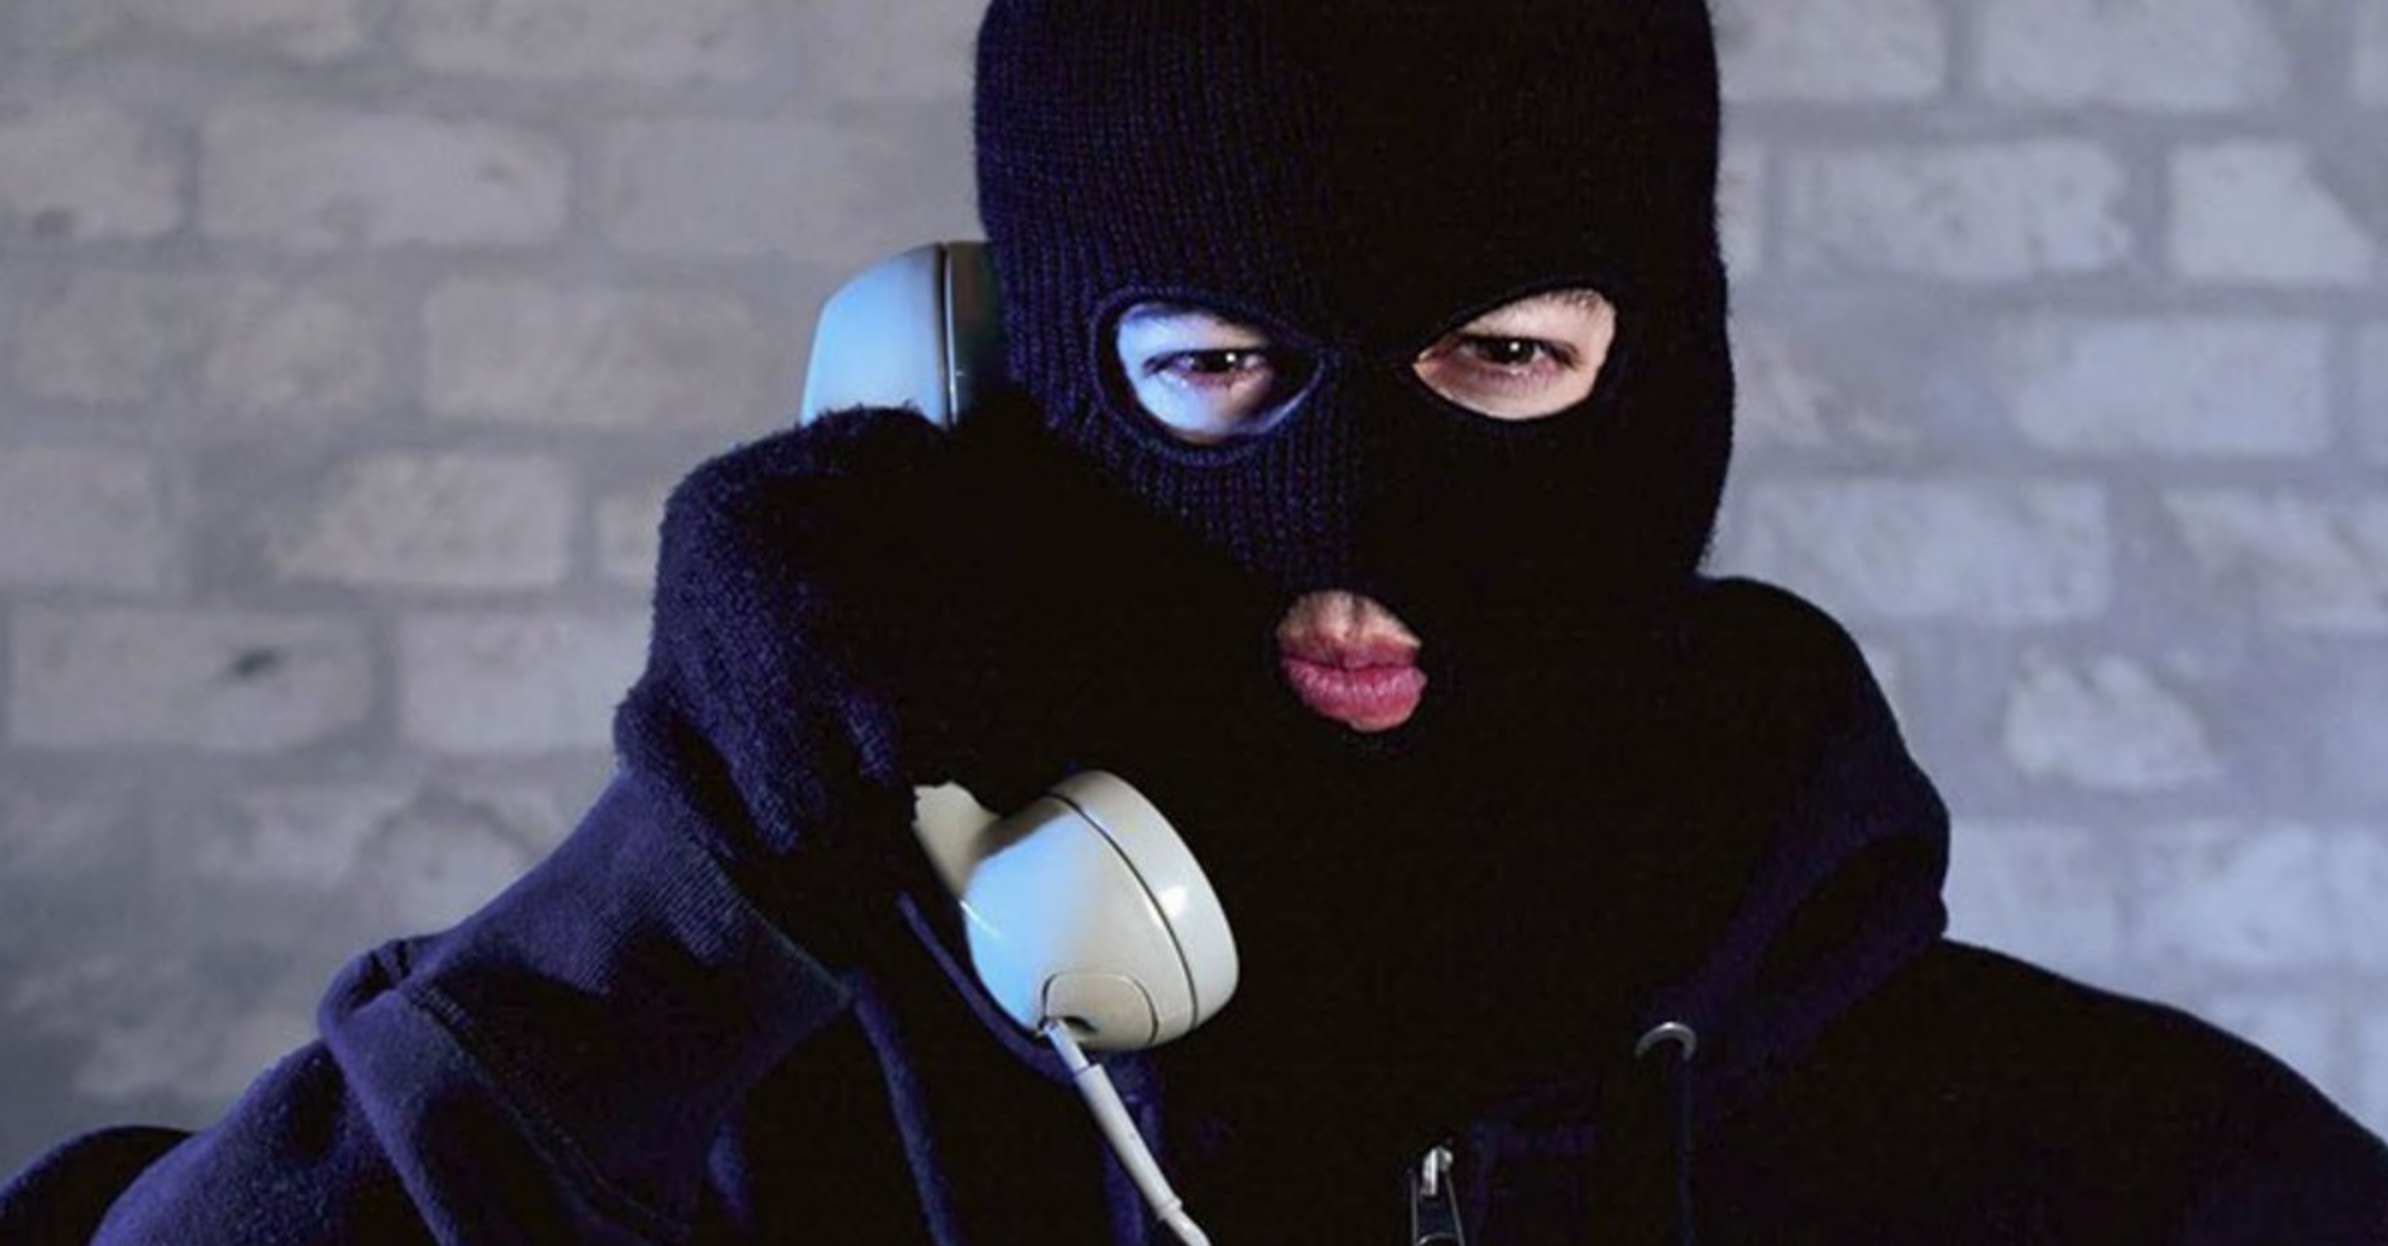 Телефонный терроризм. Телефонный террорист. Человек в маске с телефоном. Звонок с угрозами.